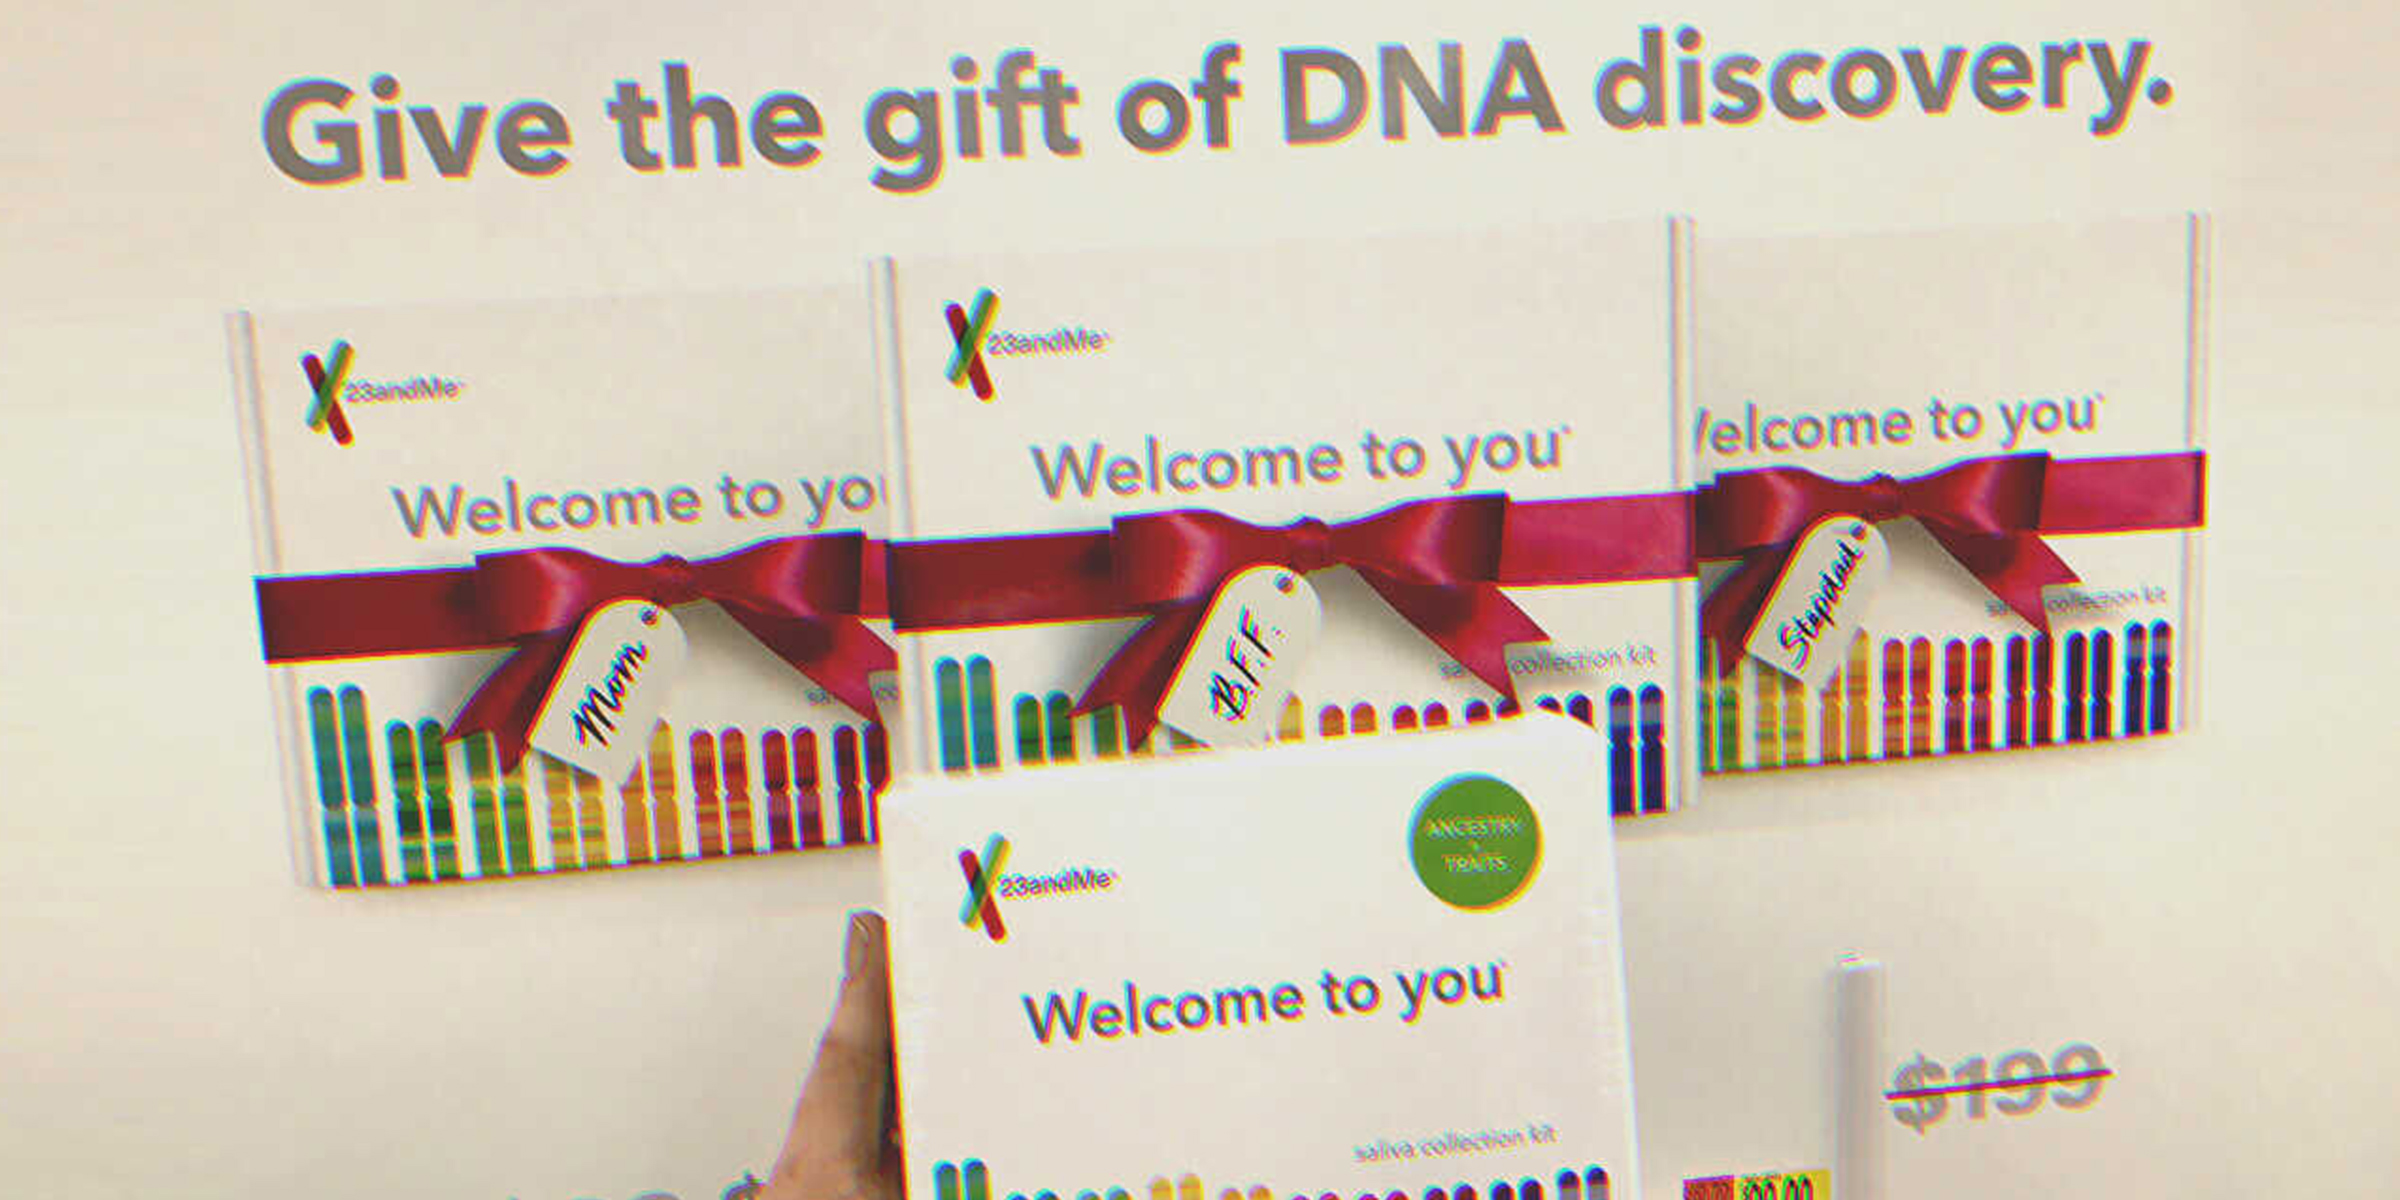 Ein DNA-Testkit | Quelle: flickr.com/CC BY 2.0/JeepersMedia